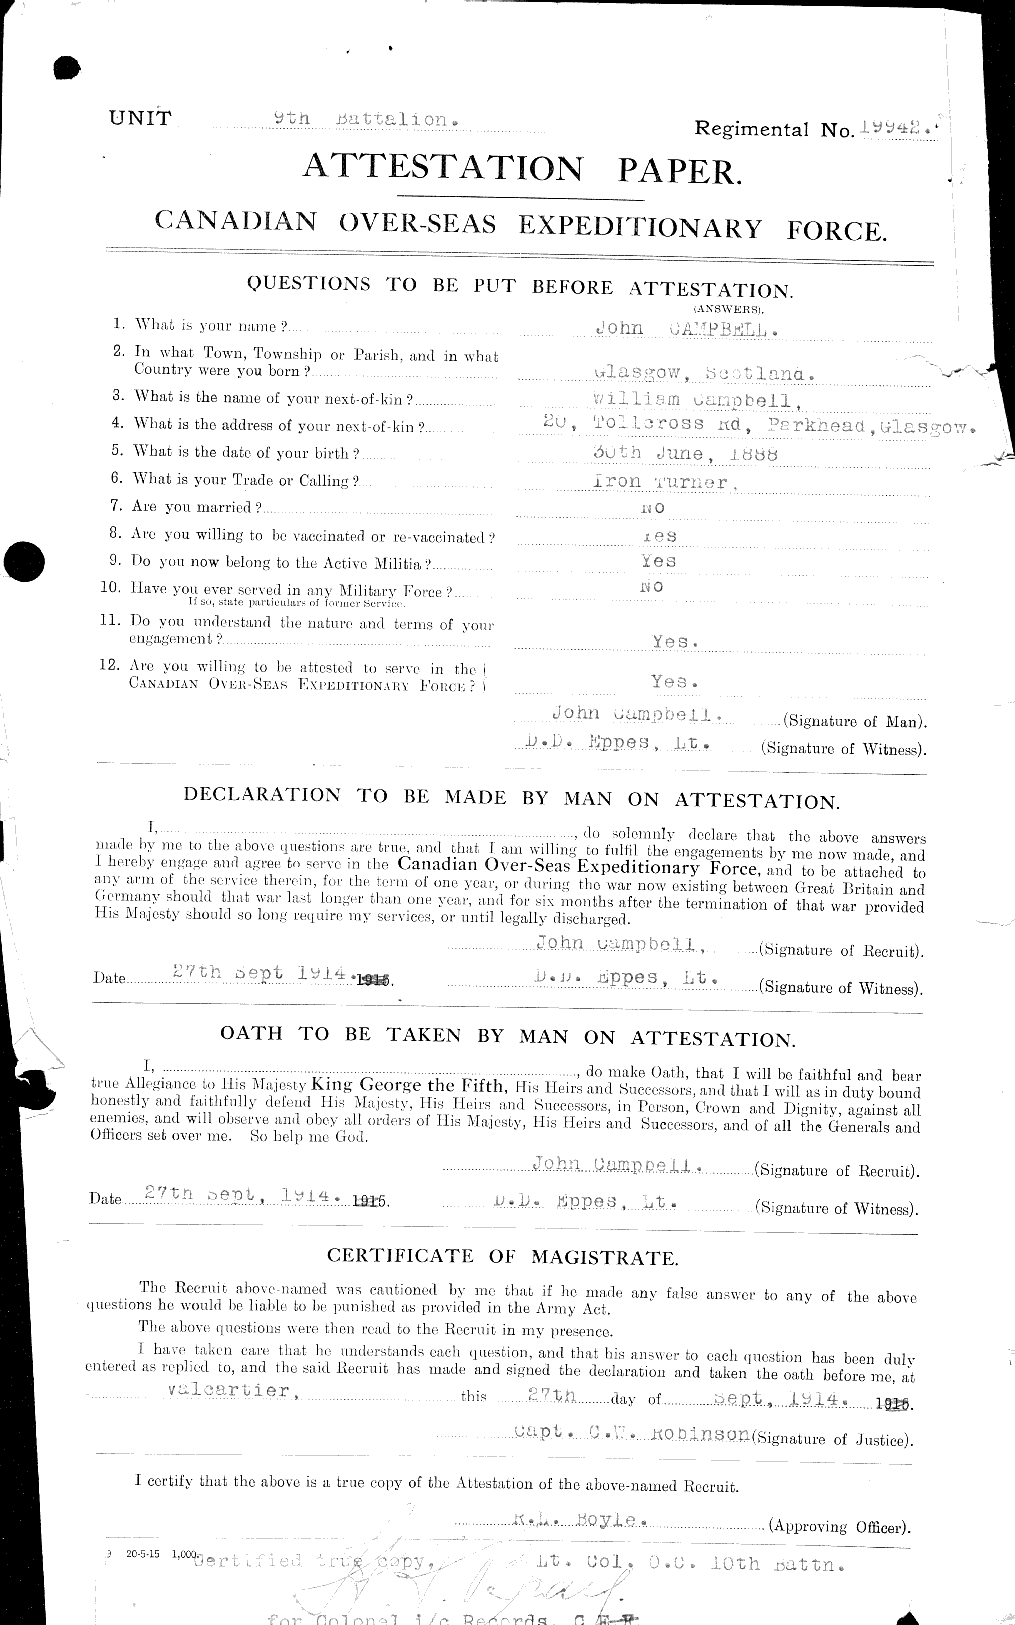 Dossiers du Personnel de la Première Guerre mondiale - CEC 006795a